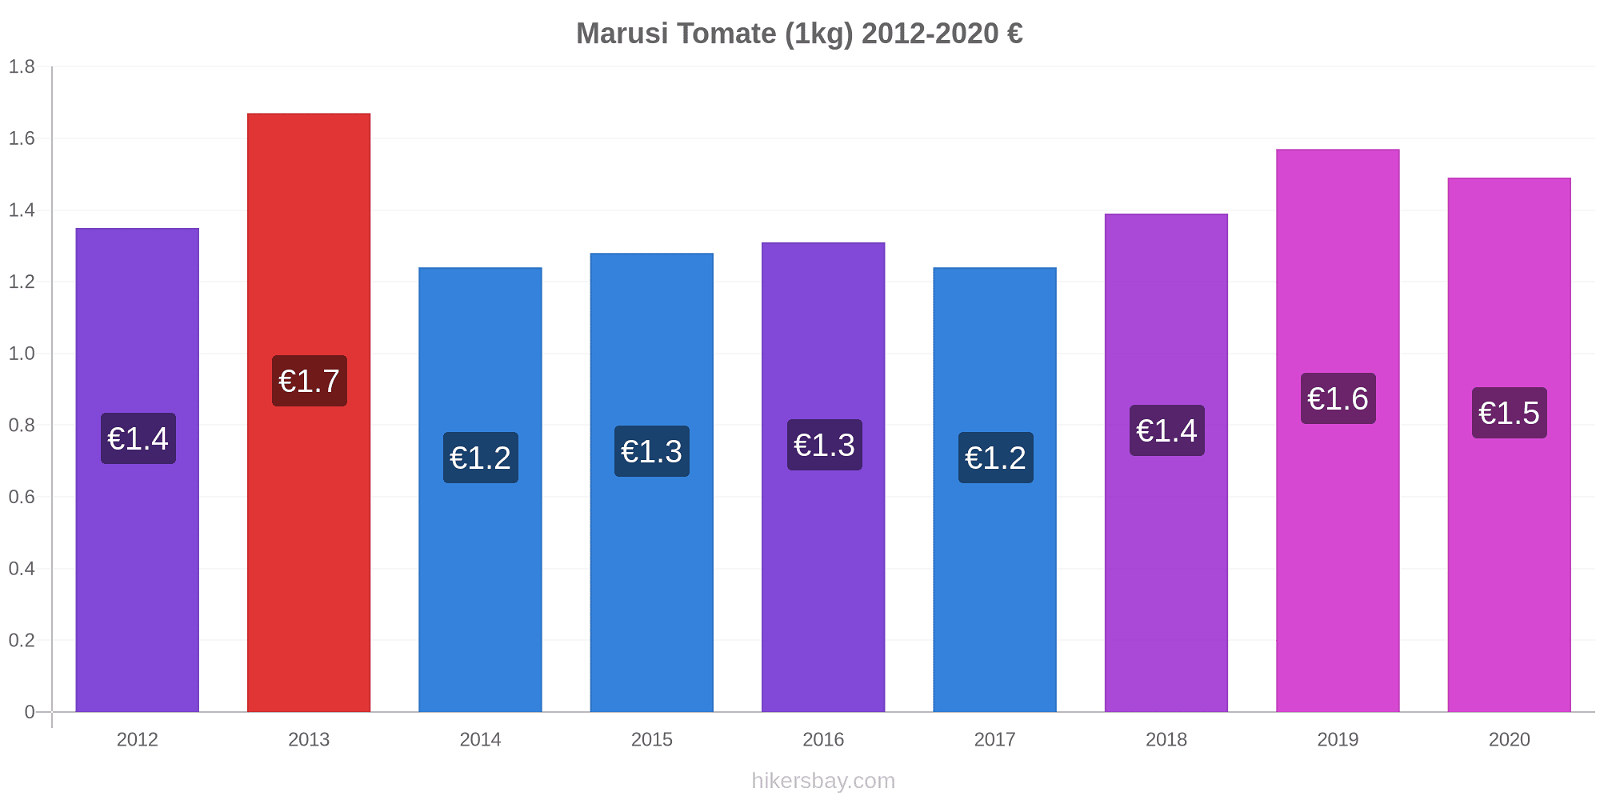 Marusi variação de preço Tomate (1kg) hikersbay.com